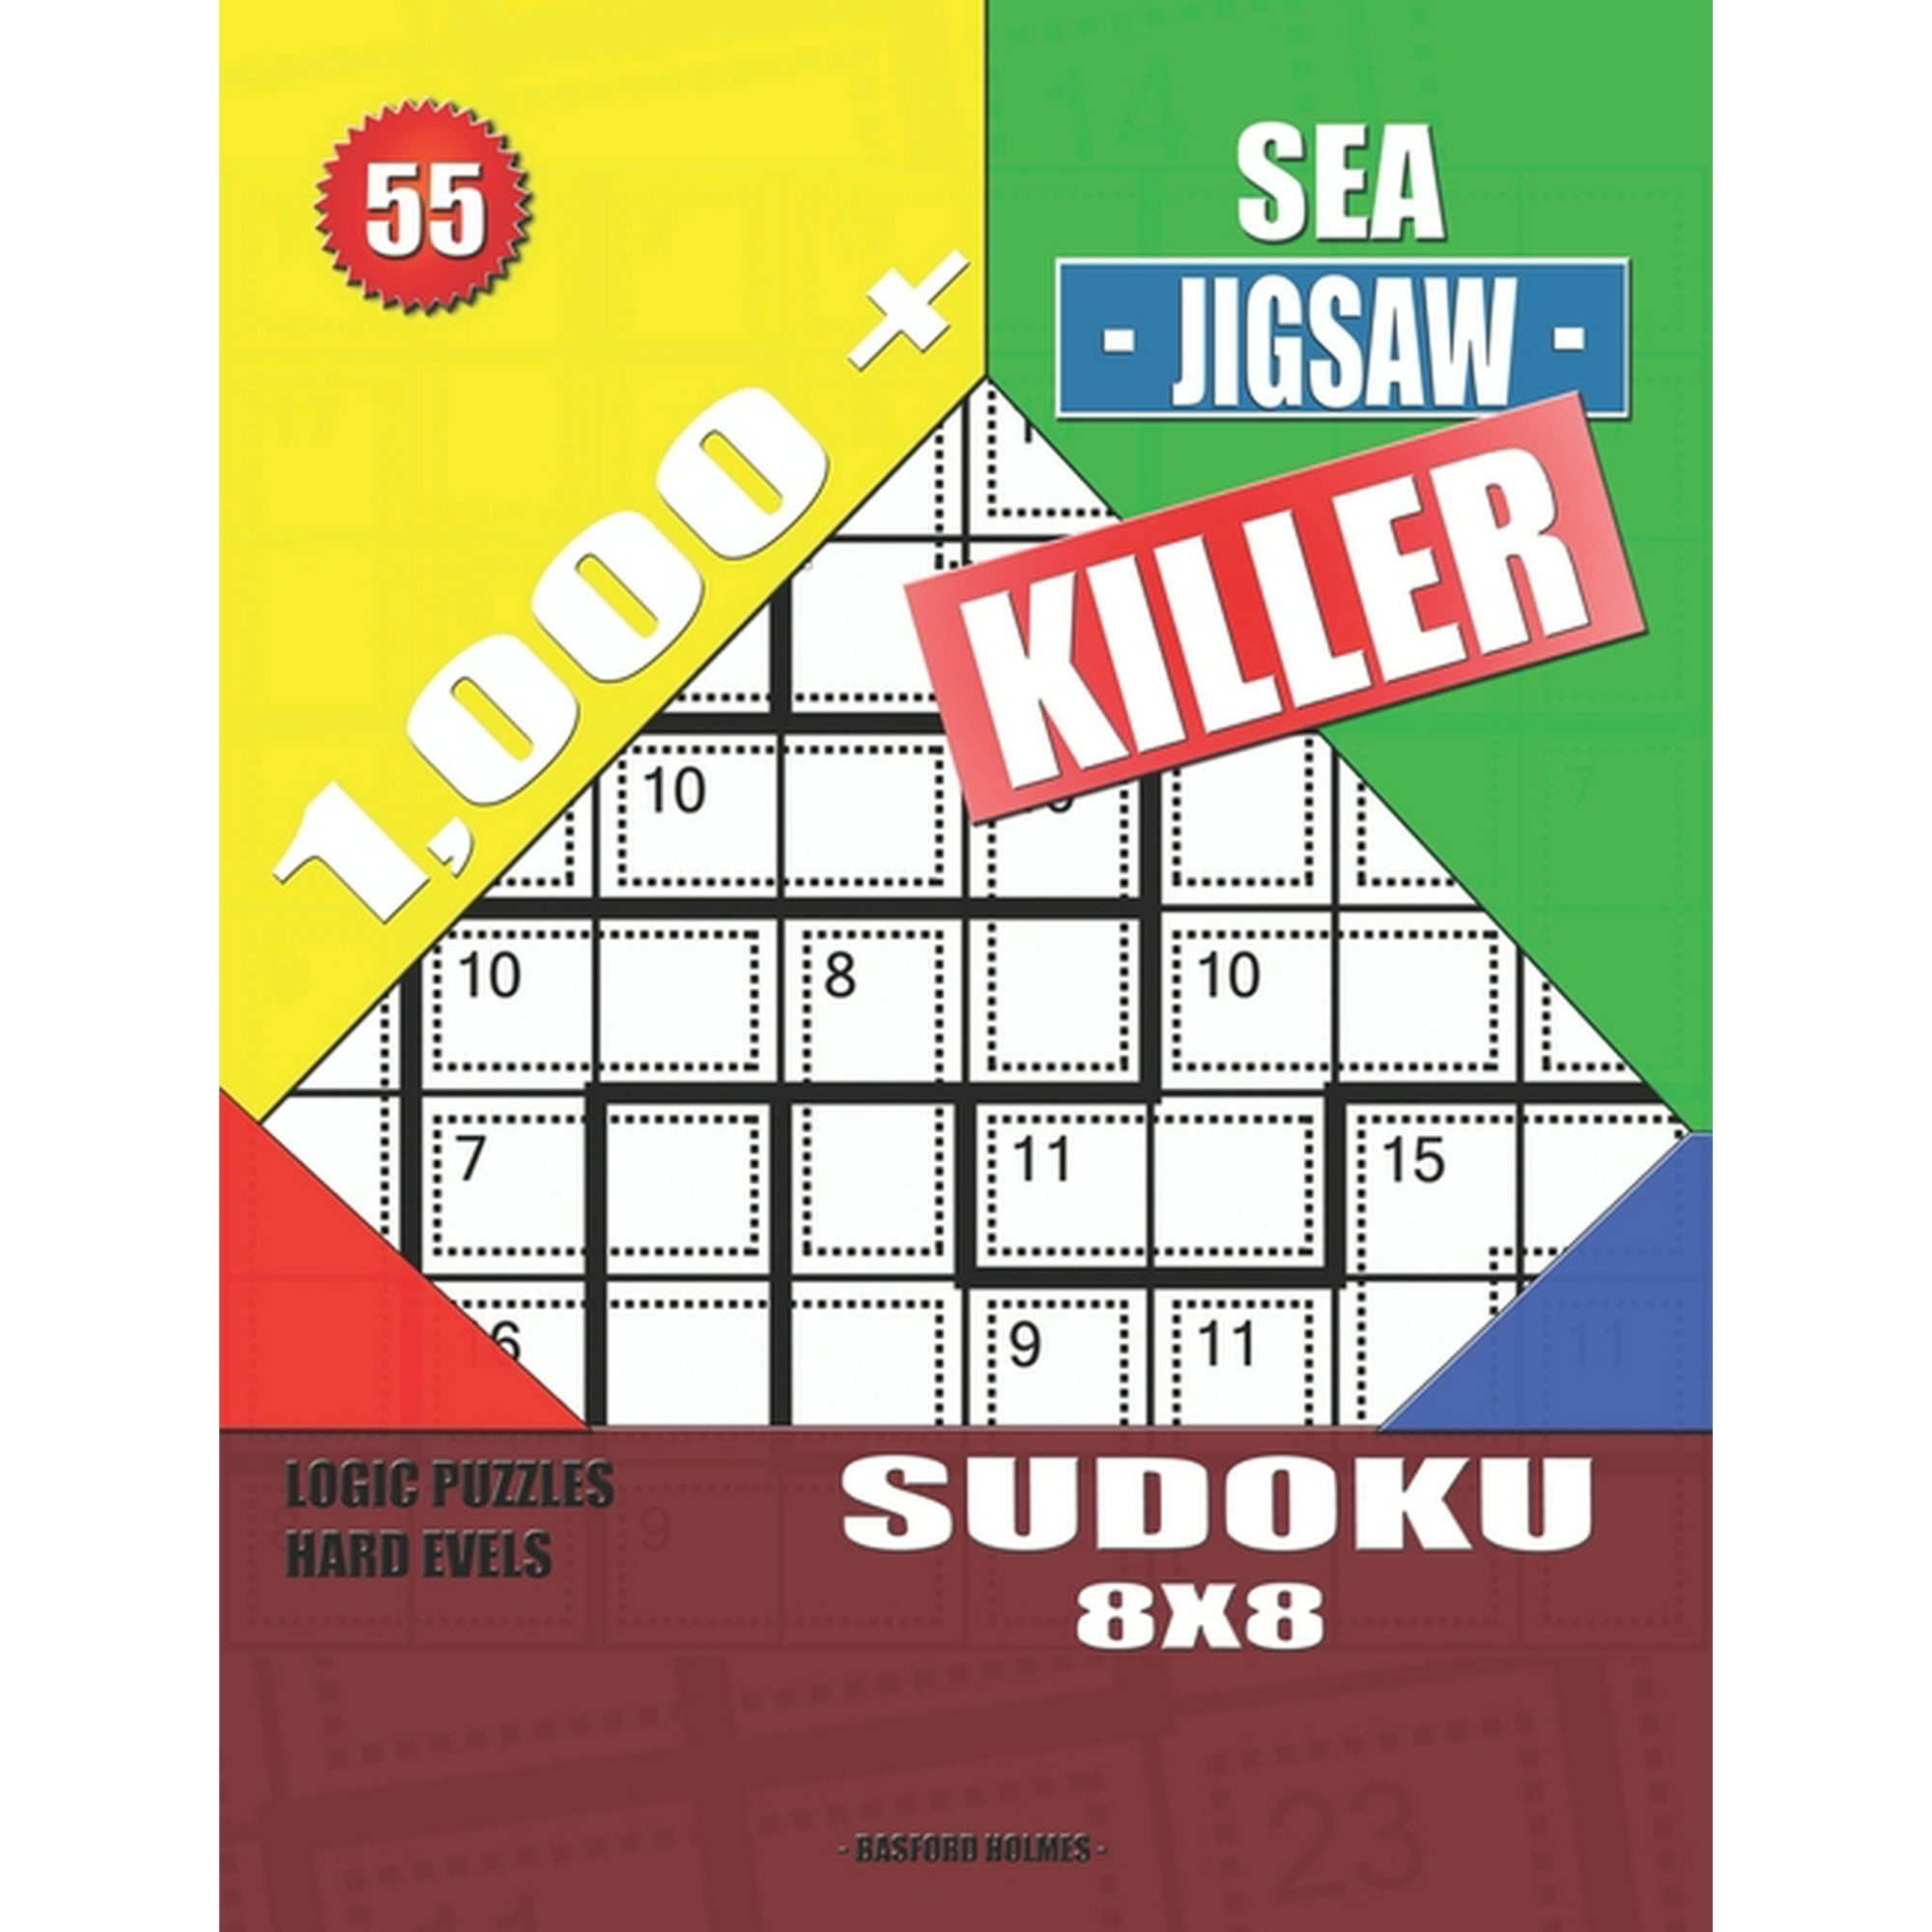 Killer Sudoku - Hard 